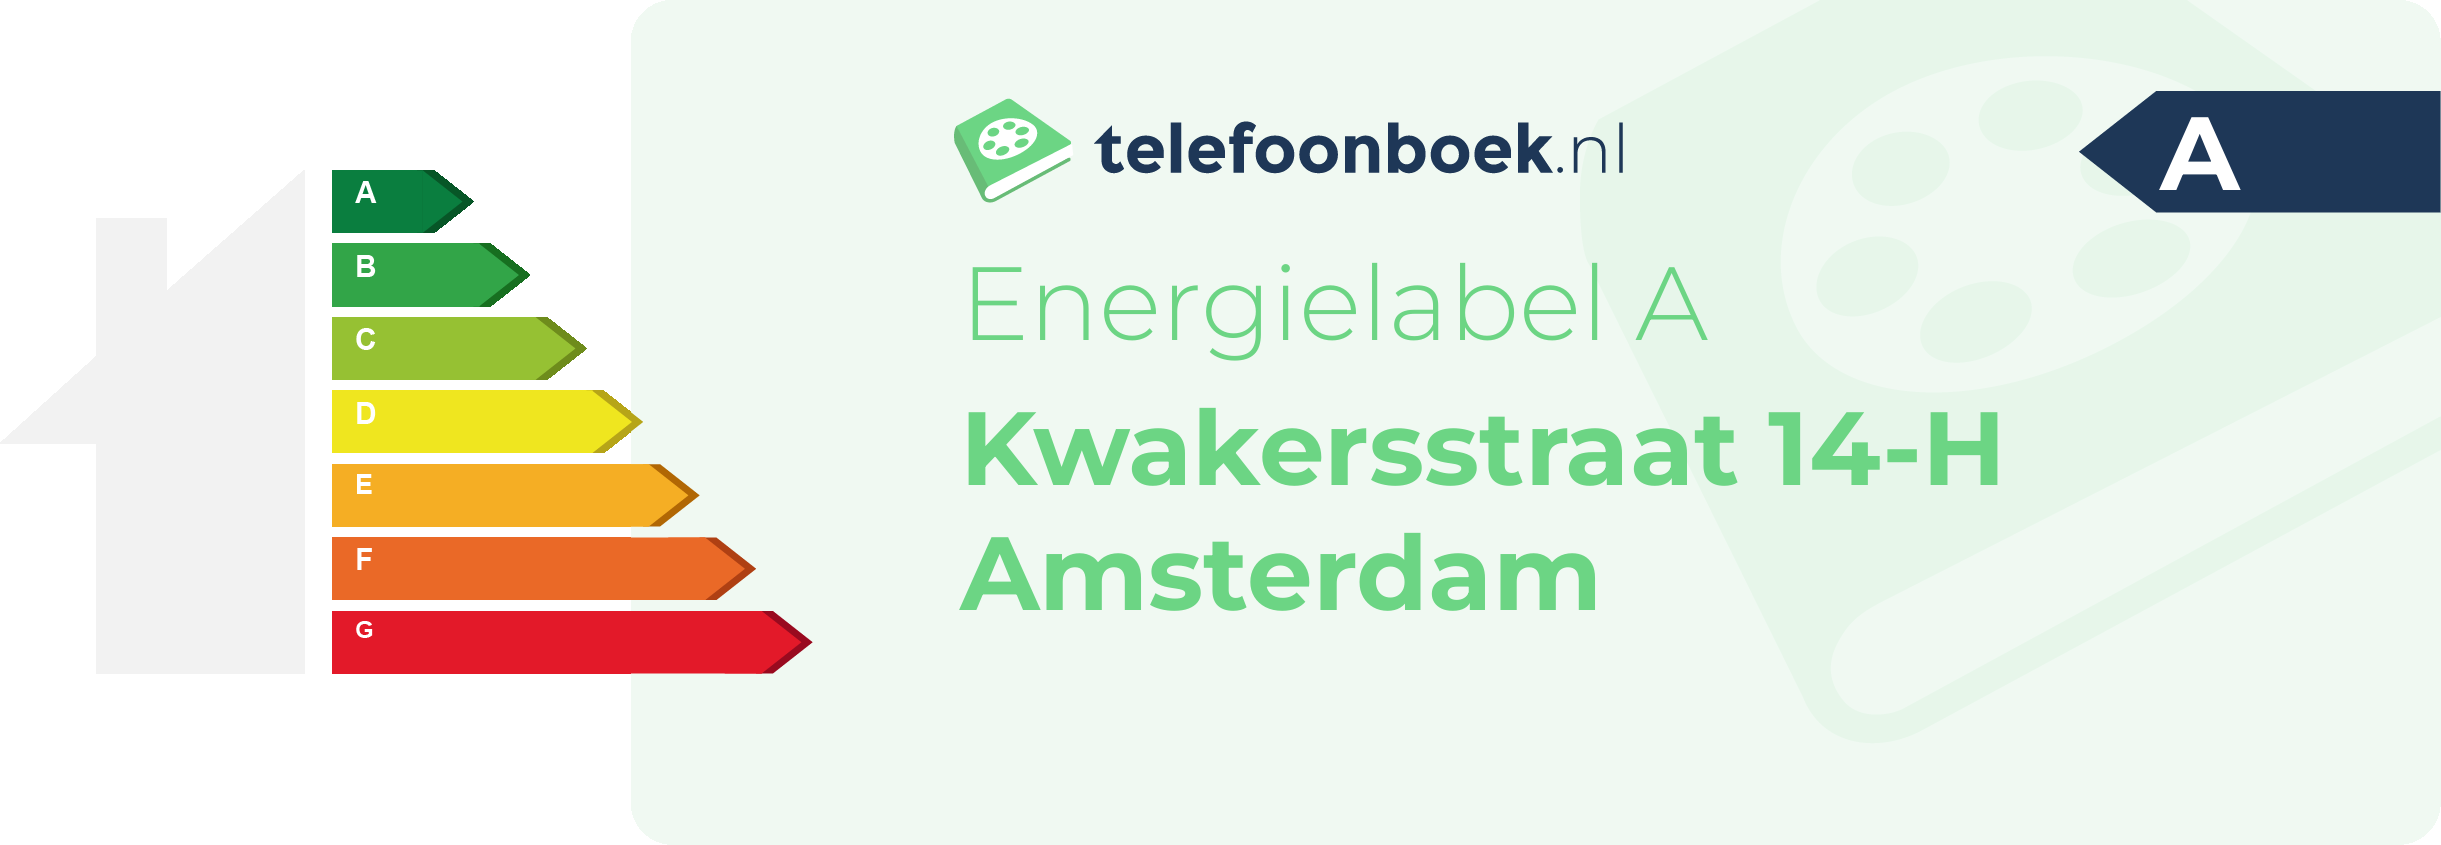 Energielabel Kwakersstraat 14-H Amsterdam